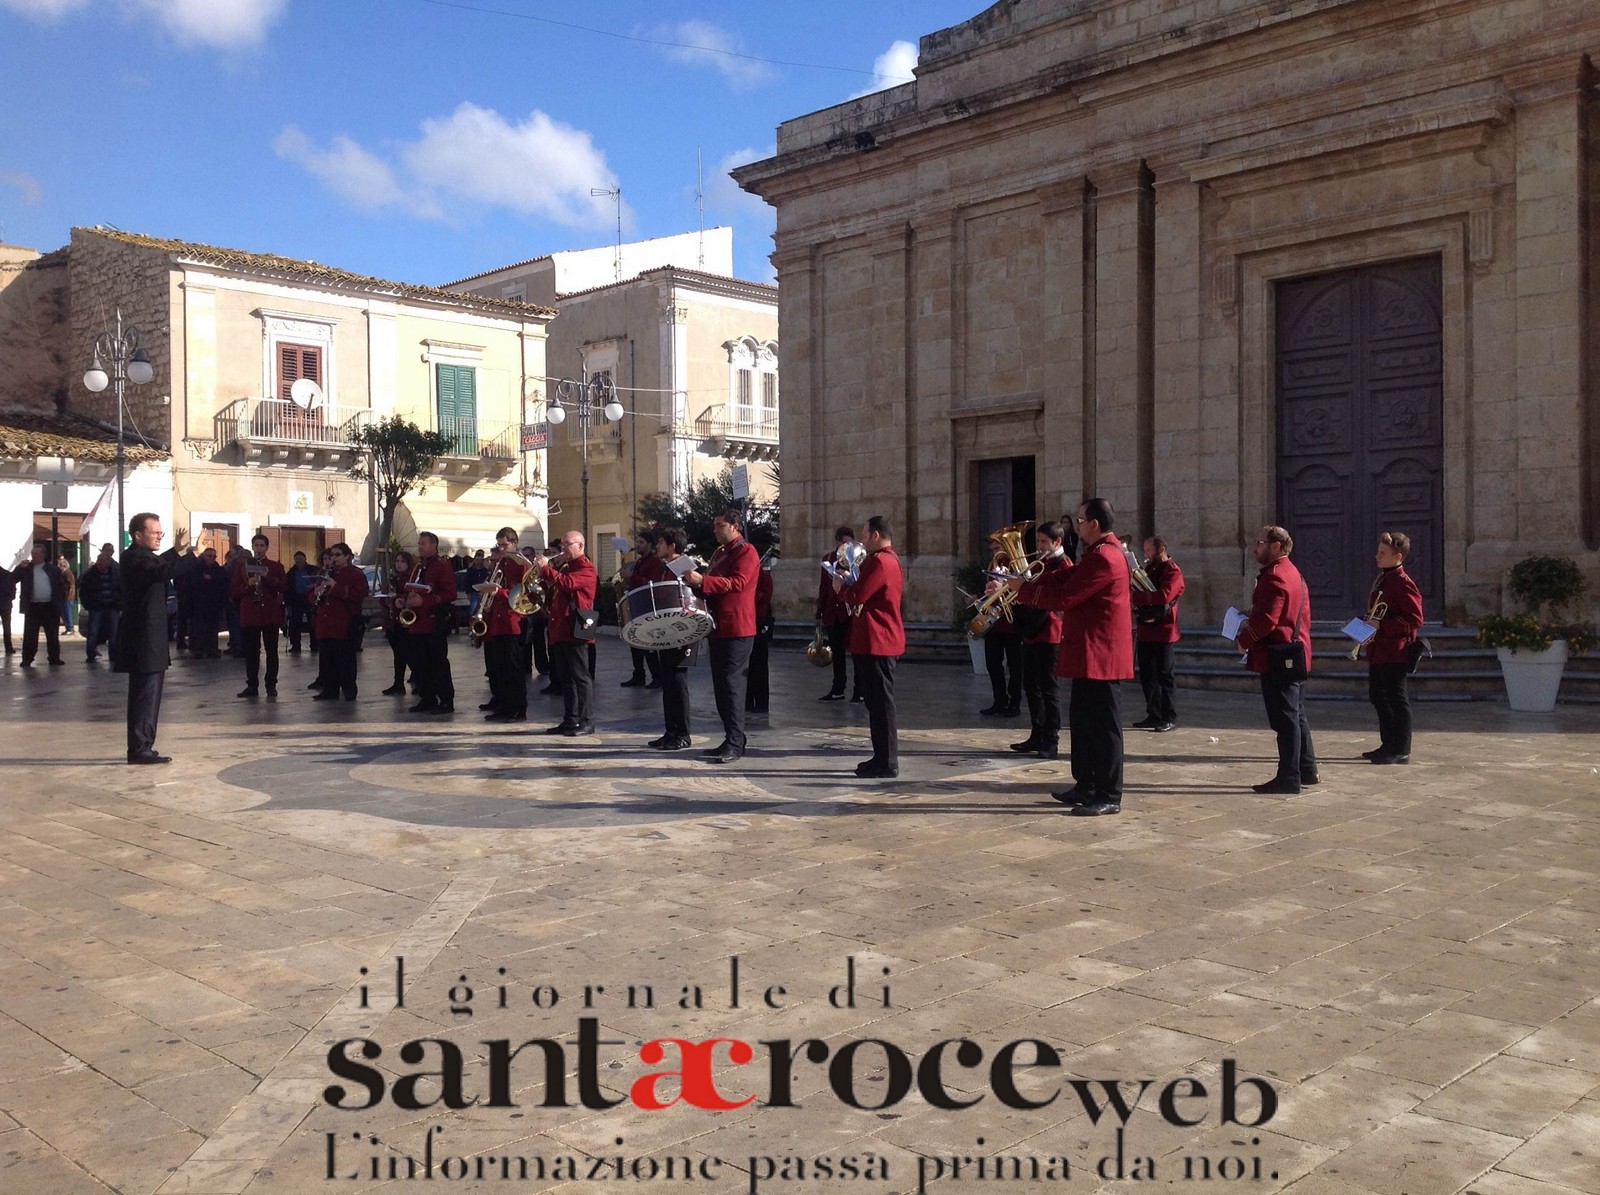  Celebrata la giornata di Santa Cecilia, patrona dei musicisti: protagonista la banda comunale